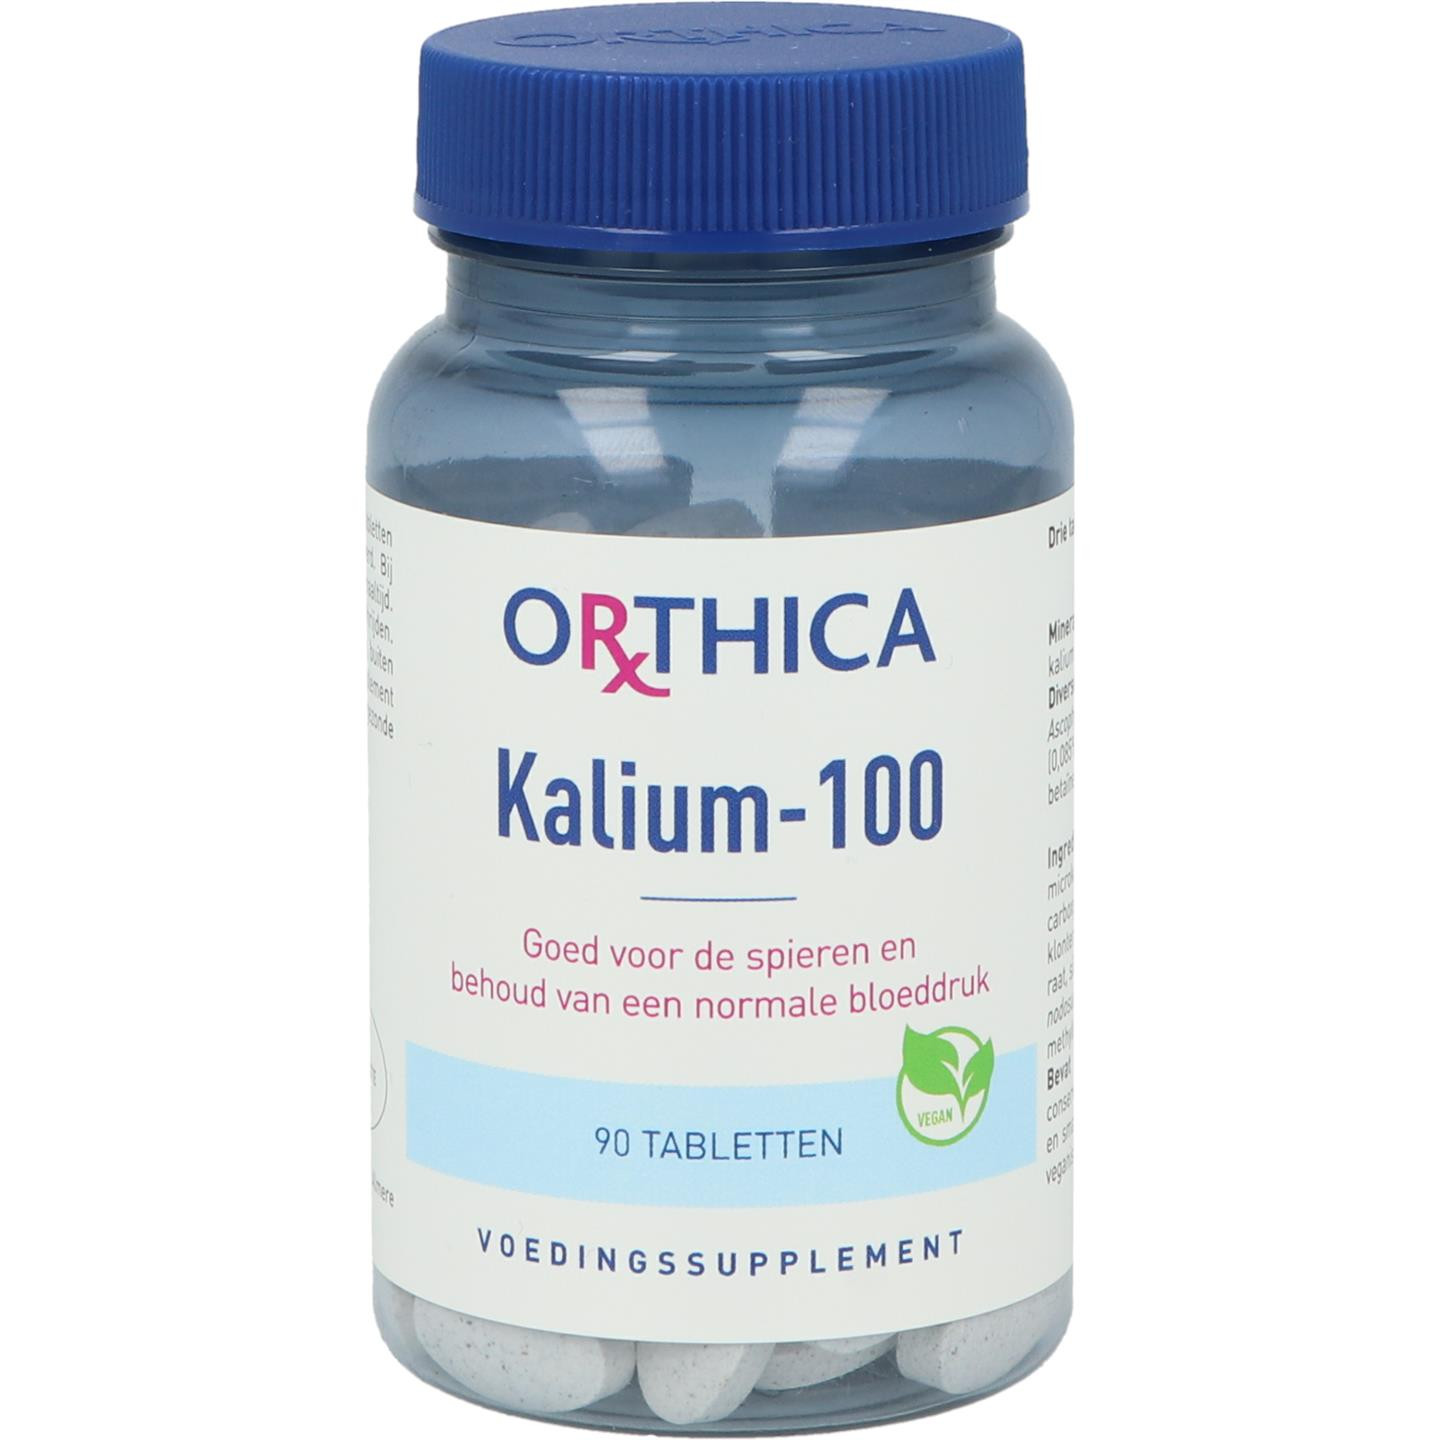 Kalium-100